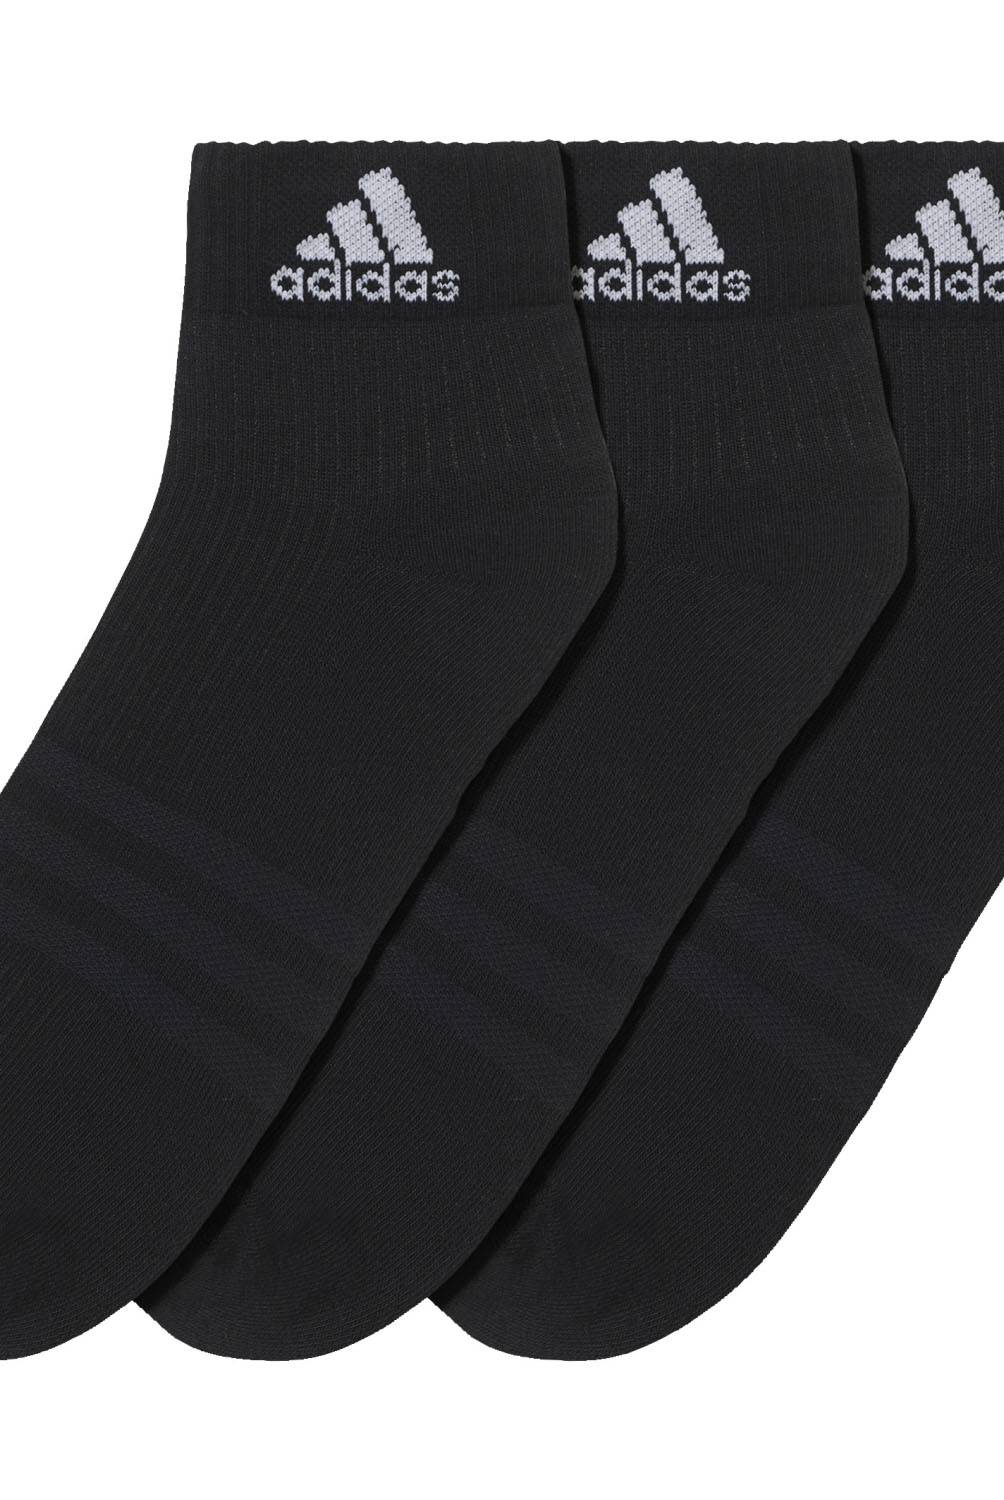 ADIDAS - Adidas Pack De 3 Calcetines Cortos Deportivos Hombre